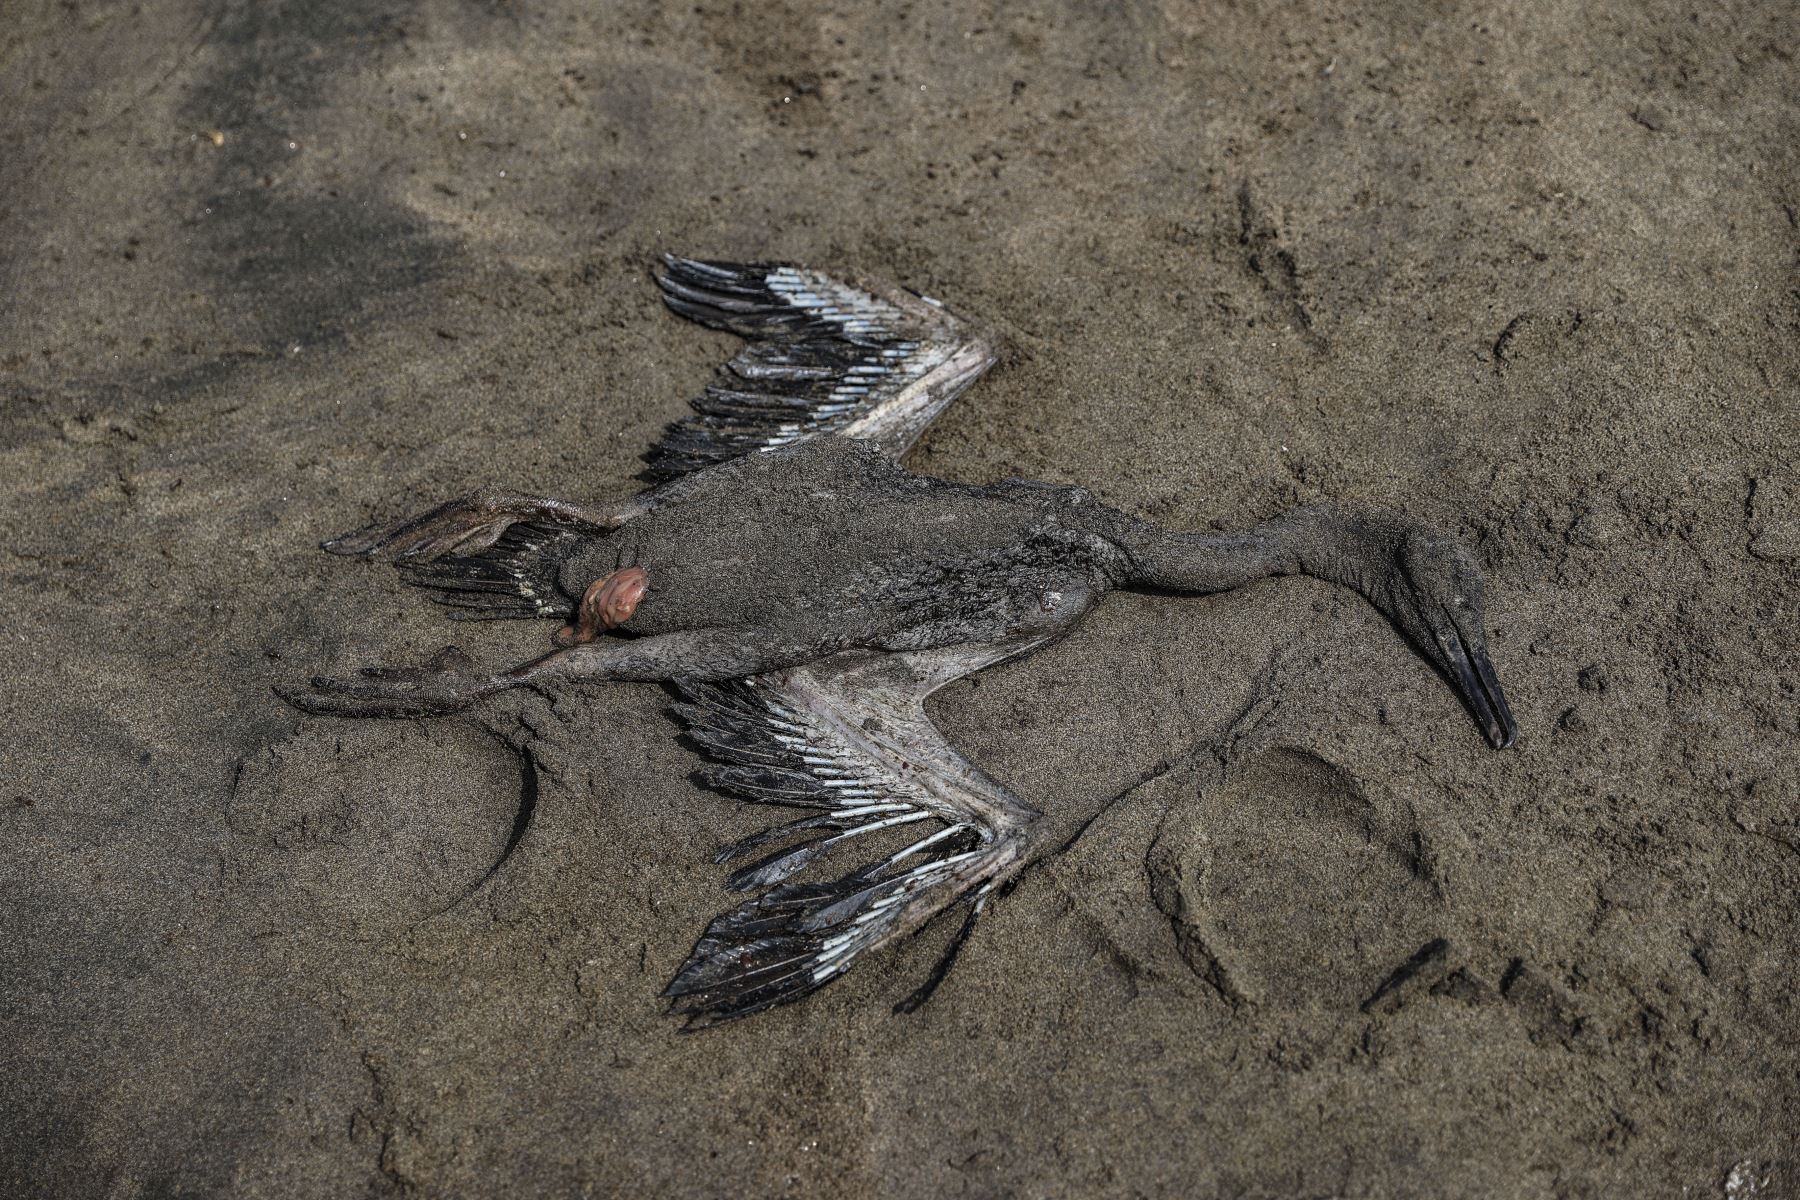 Animales marinos como pelicanos, aves, cangrejos entre otros se ven muertos en la orilla de la playa Chacra y Mar. Se conoce que más de 1,500 pescadores artesanales y sus familias serían los primeros afectados directamente por el desastre ecológico ocurrido en el mar de Ventanilla. Foto: ANDINA/Jhonel Rodriguez